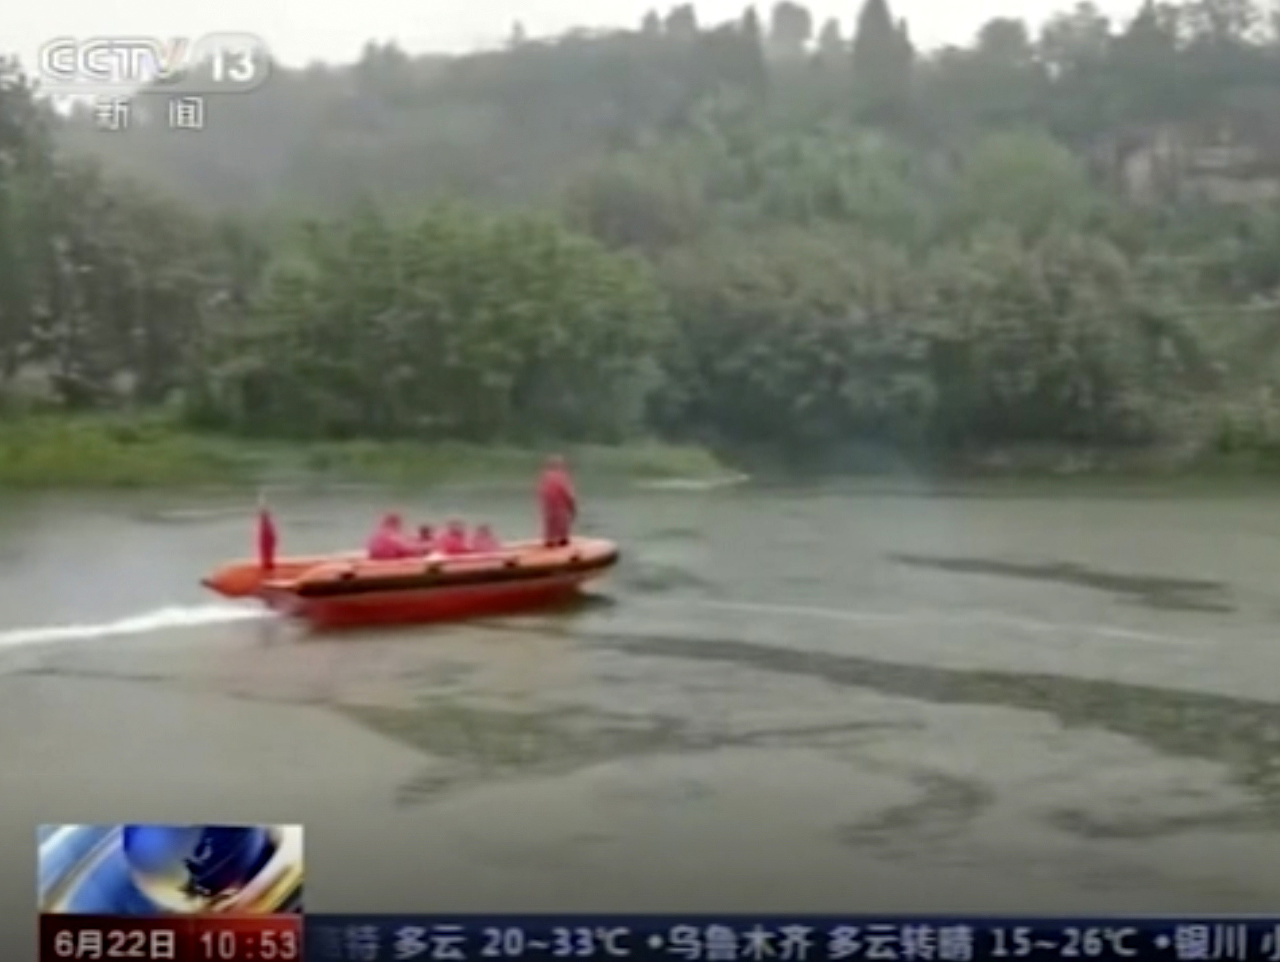 Pri neúspešnom pokuse o záchranu sa utopilo v Číne osem detí
